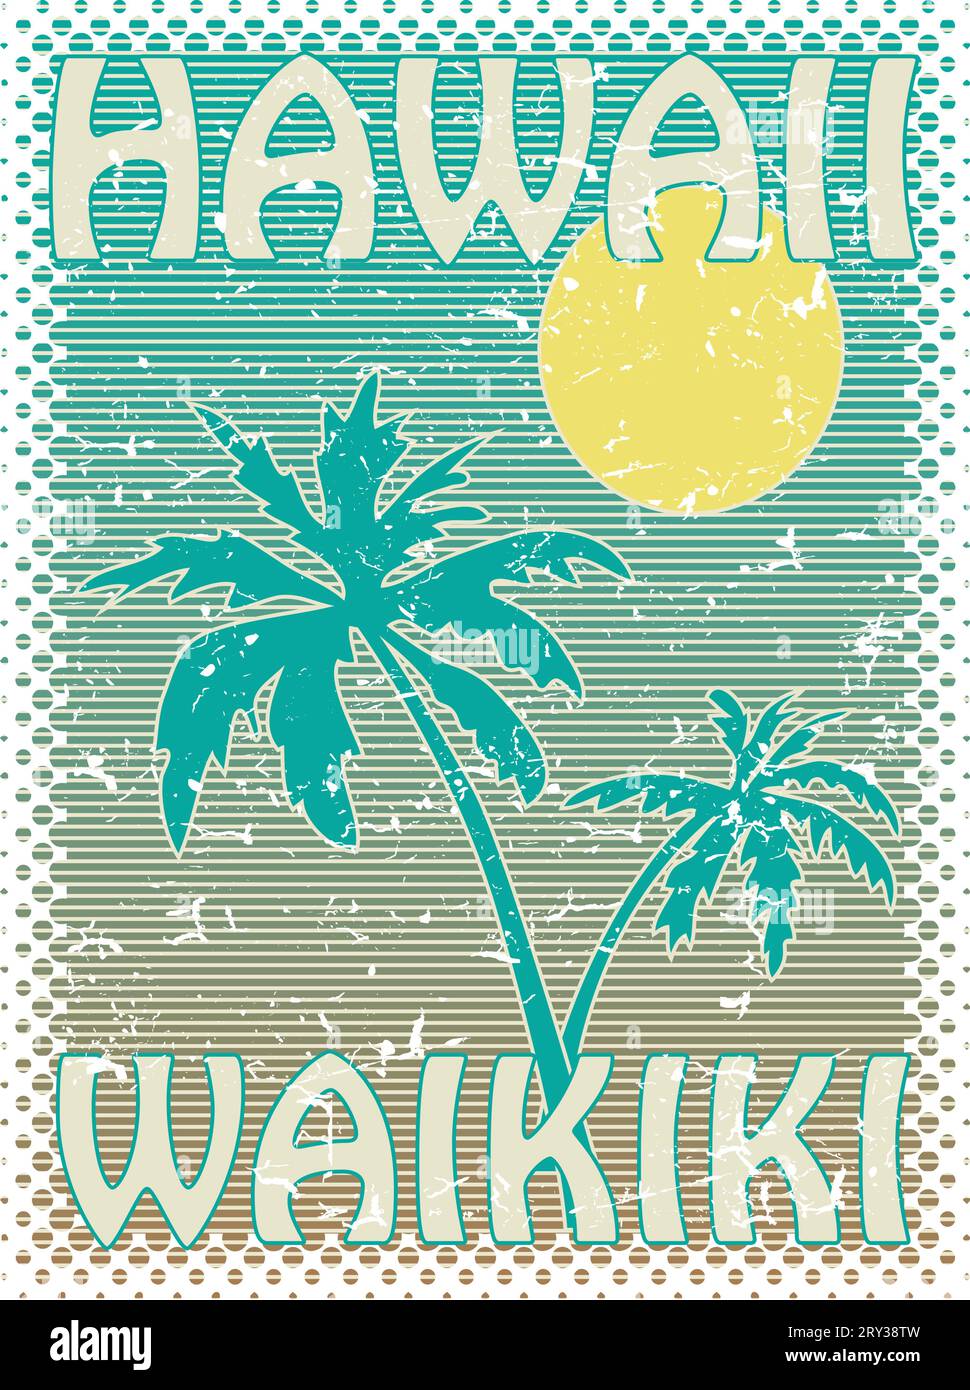 Hawaii Waikiki beach poster Stock Vector